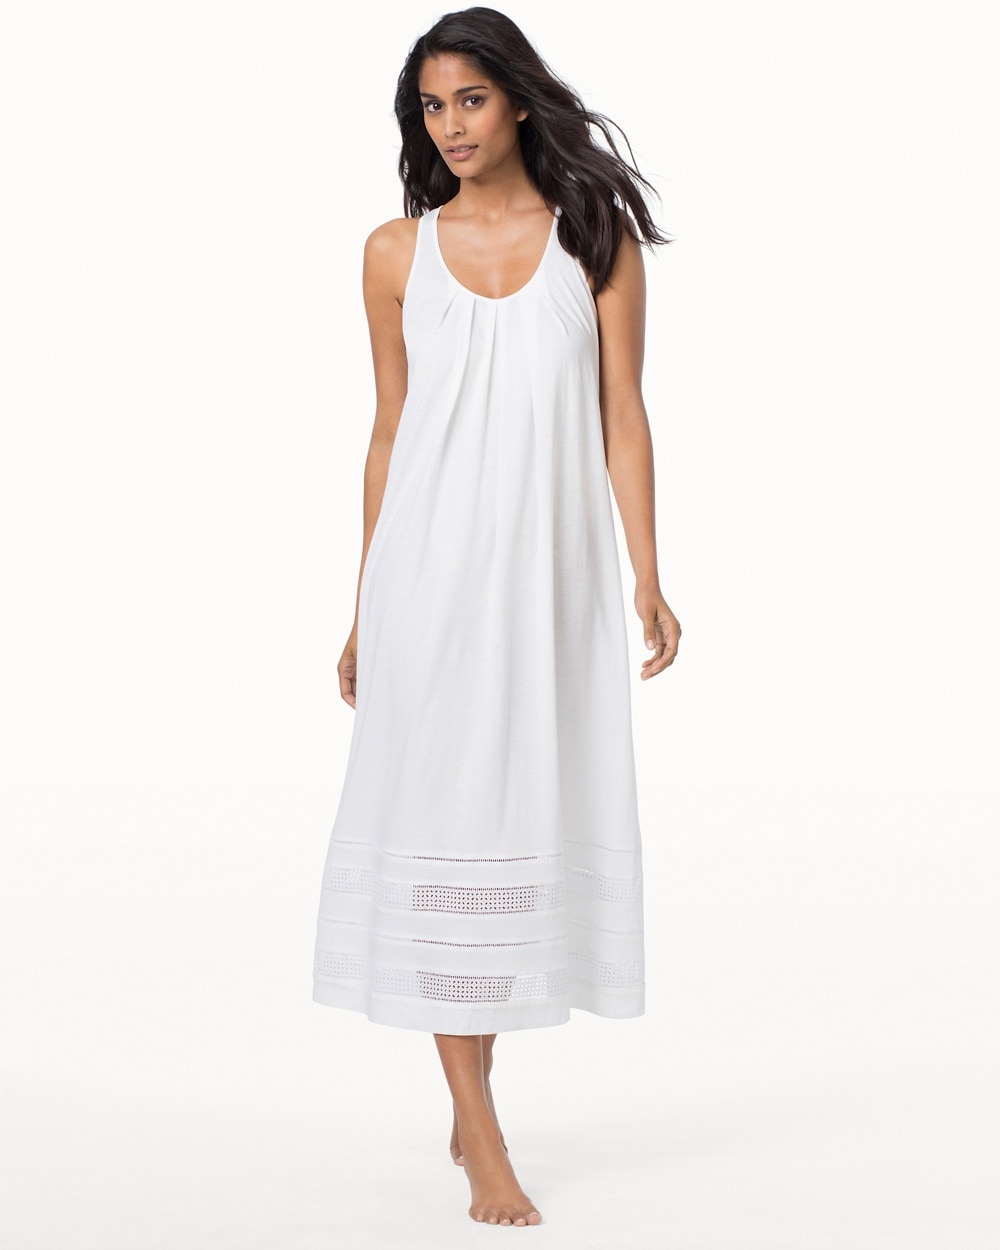 Oscar de la Renta Luxe Spa Pima Cotton Nightgown